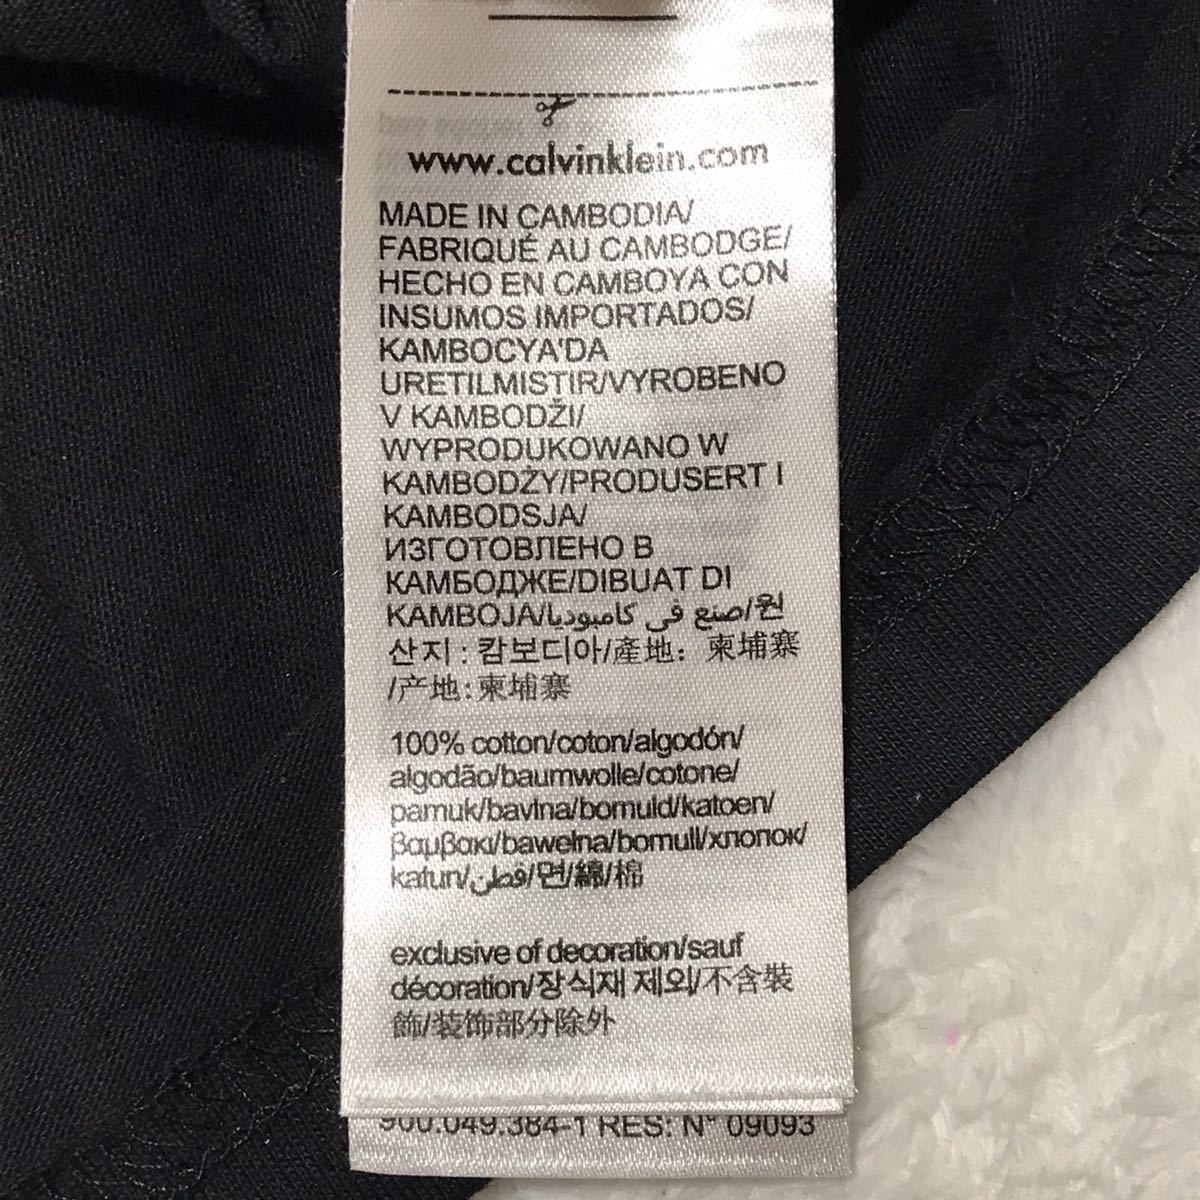 Calvin klein Jeans カルバンクラインジーンズ ロゴプリントTシャツ M〜L ブラック 黒 半袖 CK メンズ トップス_画像8